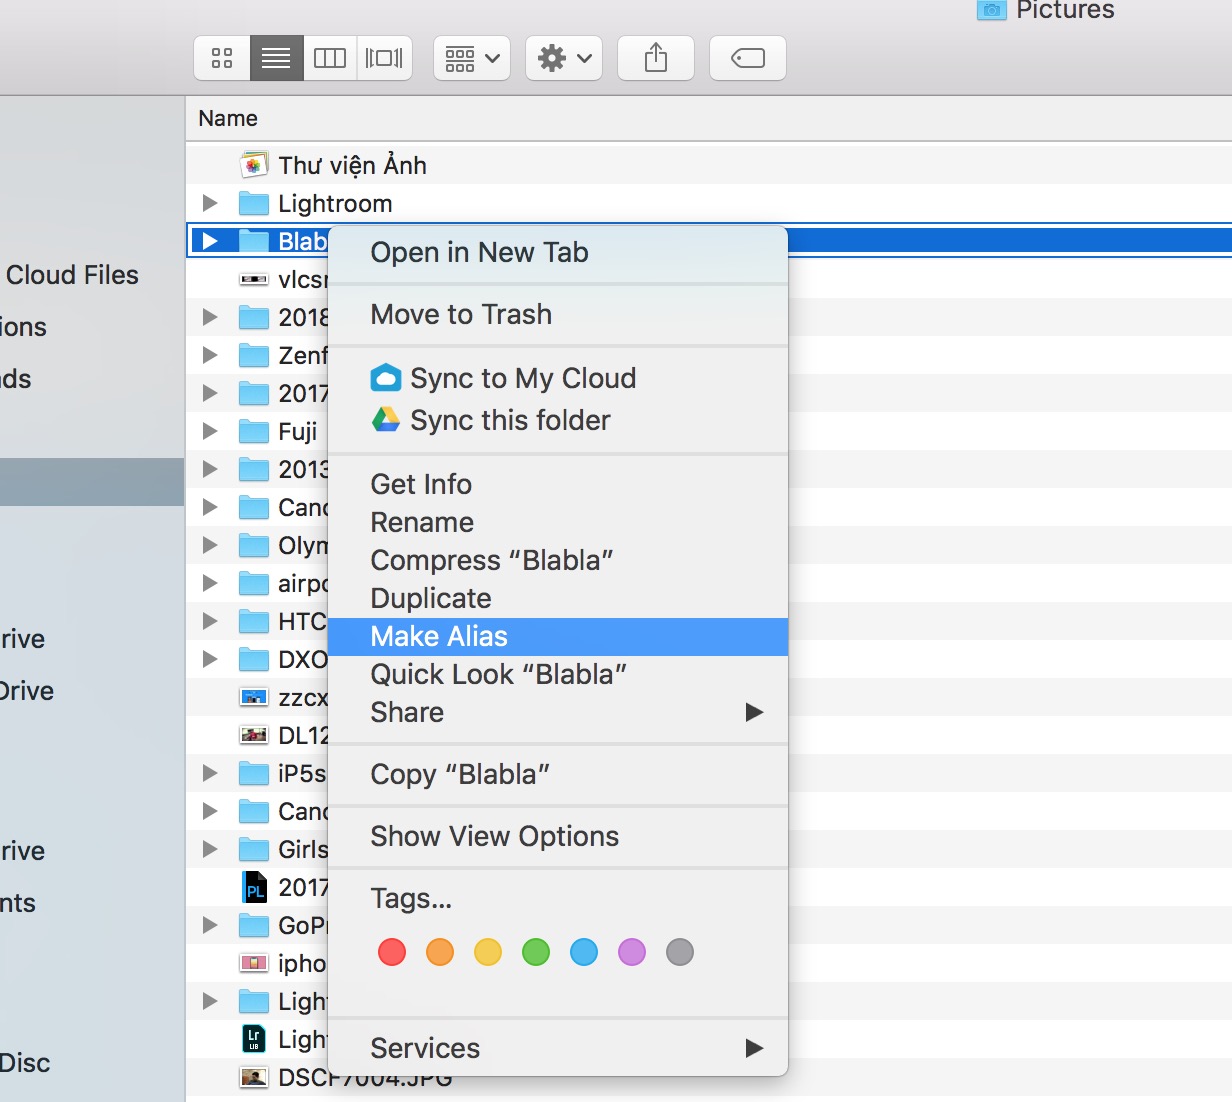 Làm quen với Mac - tạo đường dẫn truy cập nhanh (Shortcuts) từ Desktop trên macOS